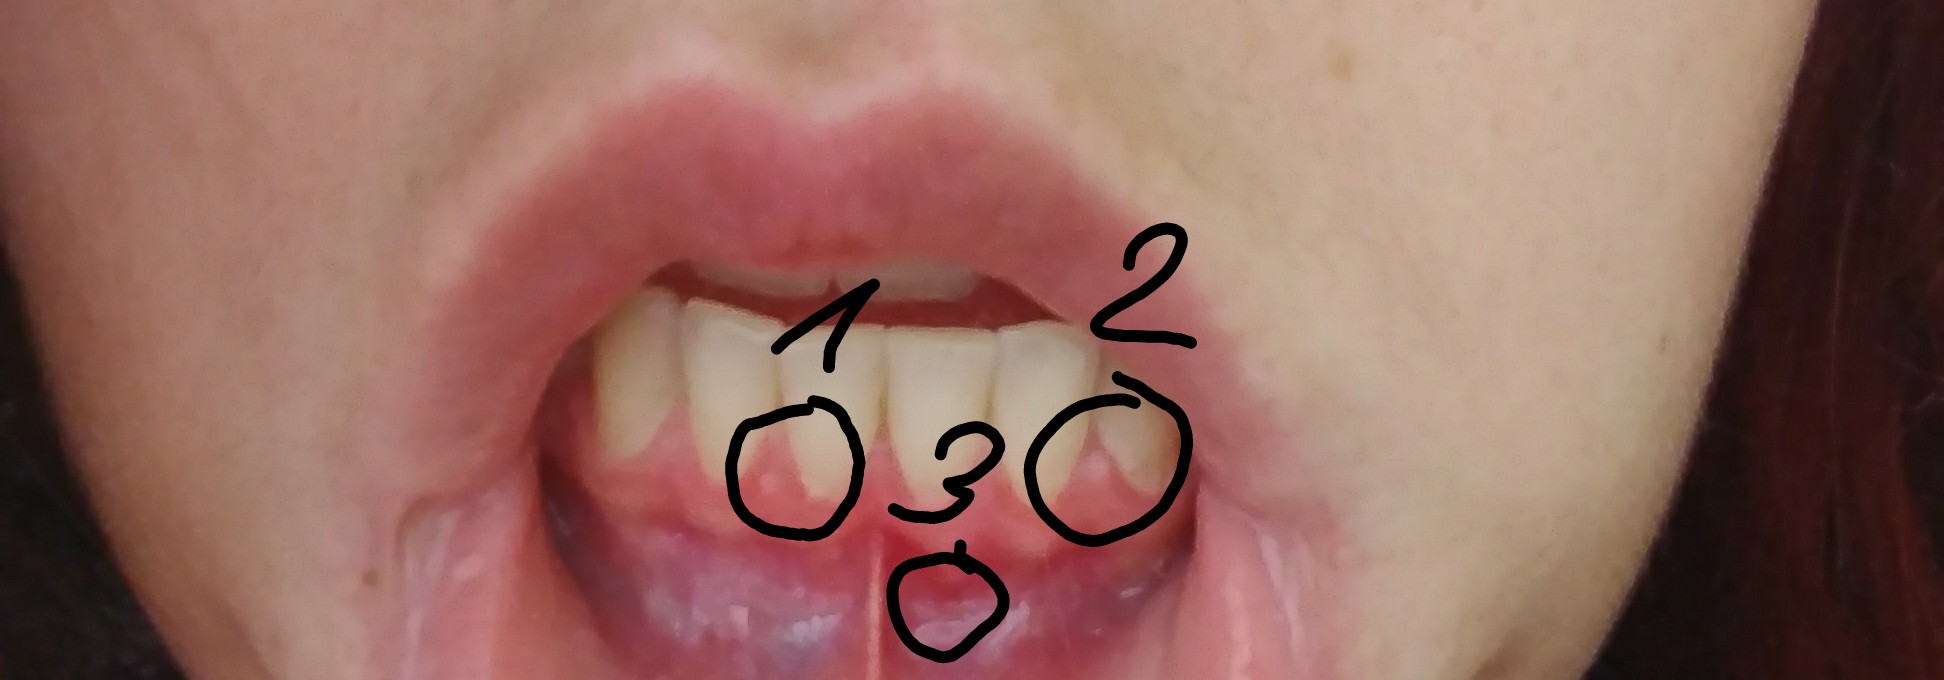 Zahnfleisch Weiße Punkte